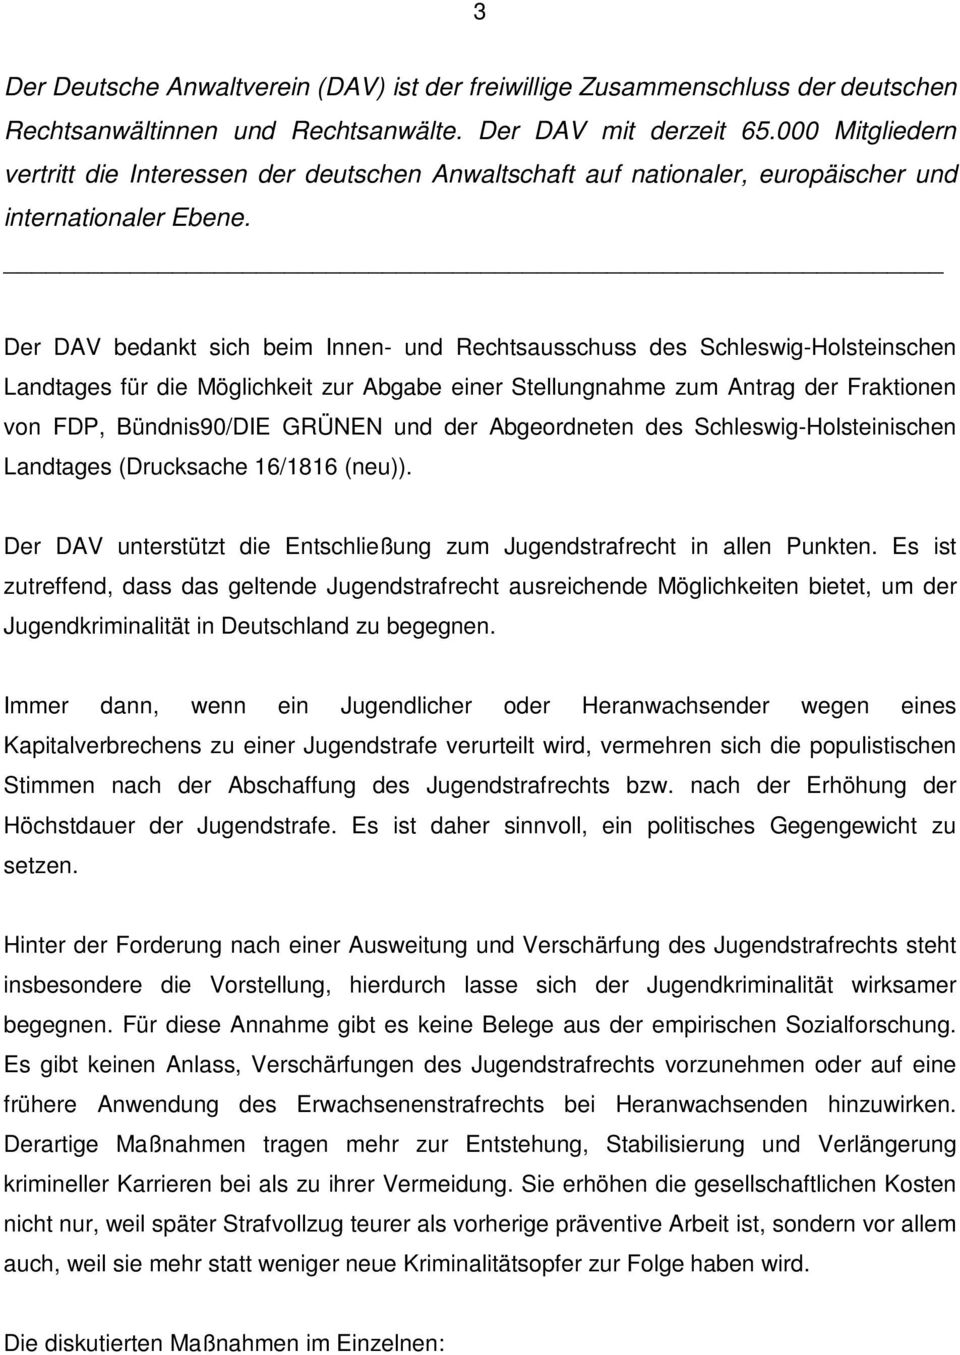 Der DAV bedankt sich beim Innen- und Rechtsausschuss des Schleswig-Holsteinschen Landtages für die Möglichkeit zur Abgabe einer Stellungnahme zum Antrag der Fraktionen von FDP, Bündnis90/DIE GRÜNEN